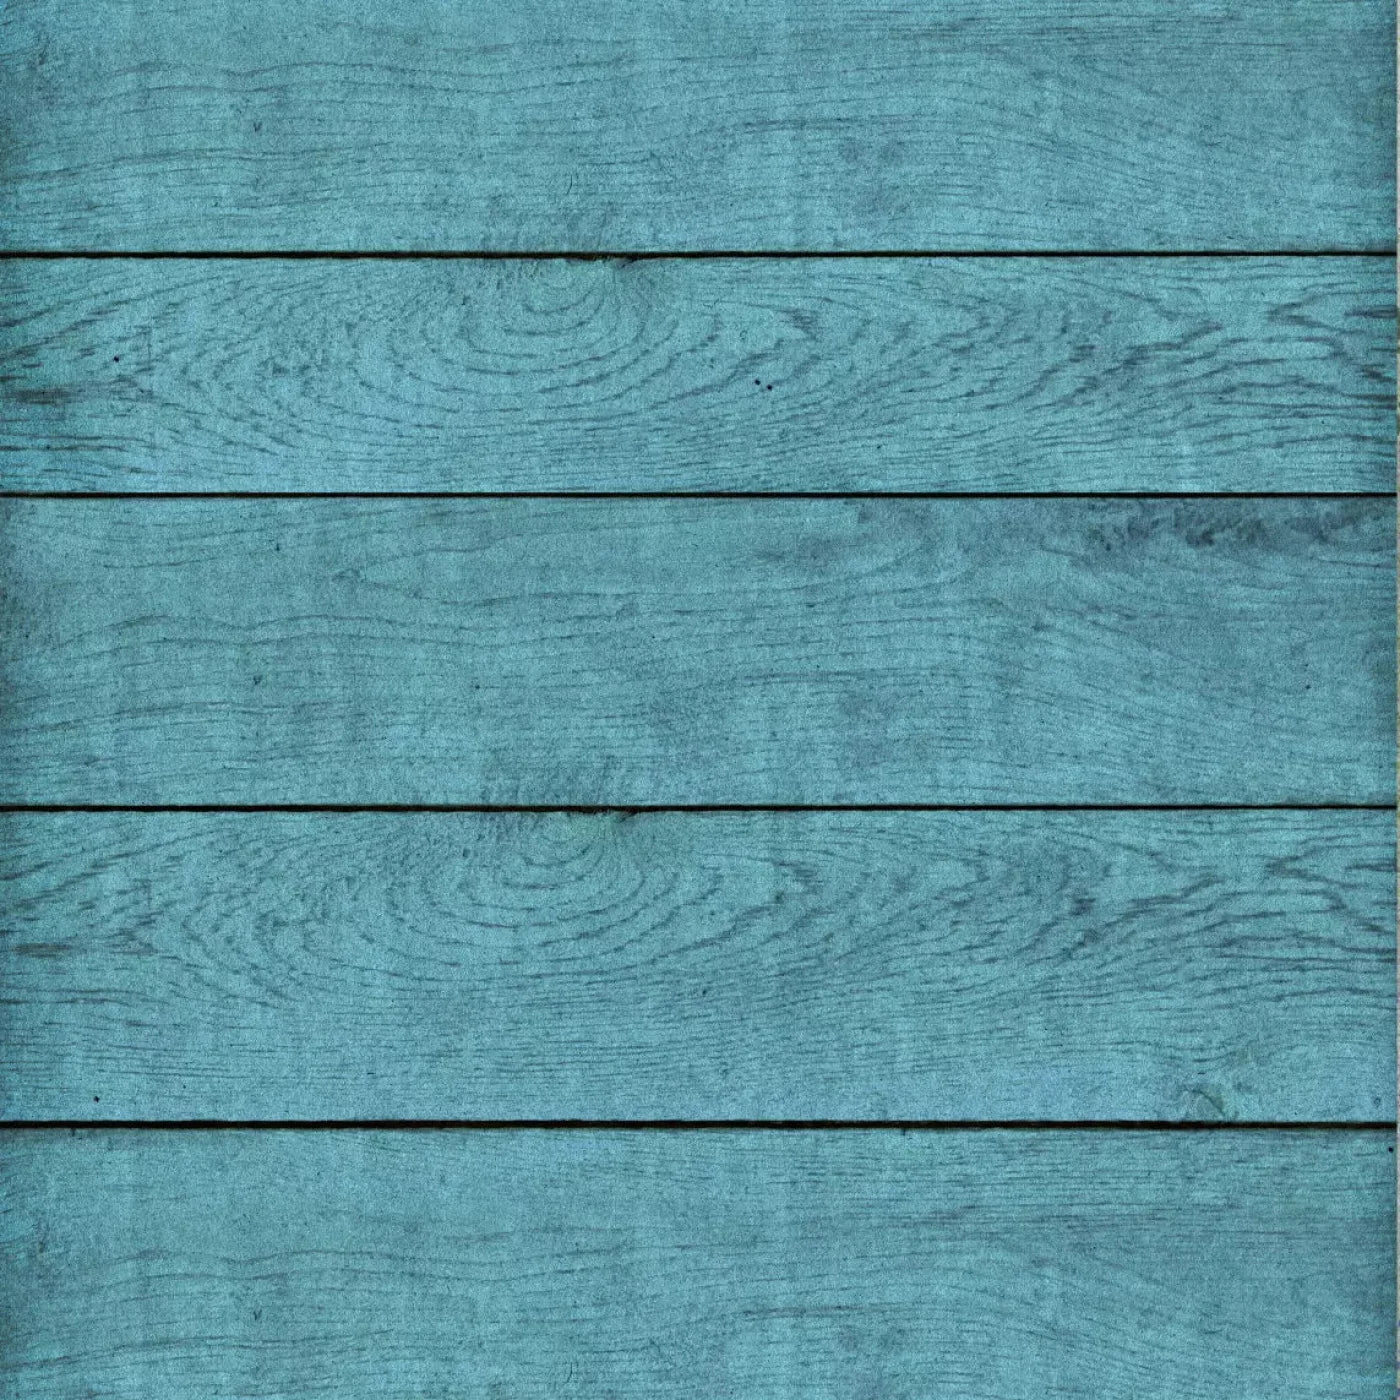 Boarded Blue 5X5 Rubbermat Floor ( 60 X Inch ) Backdrop